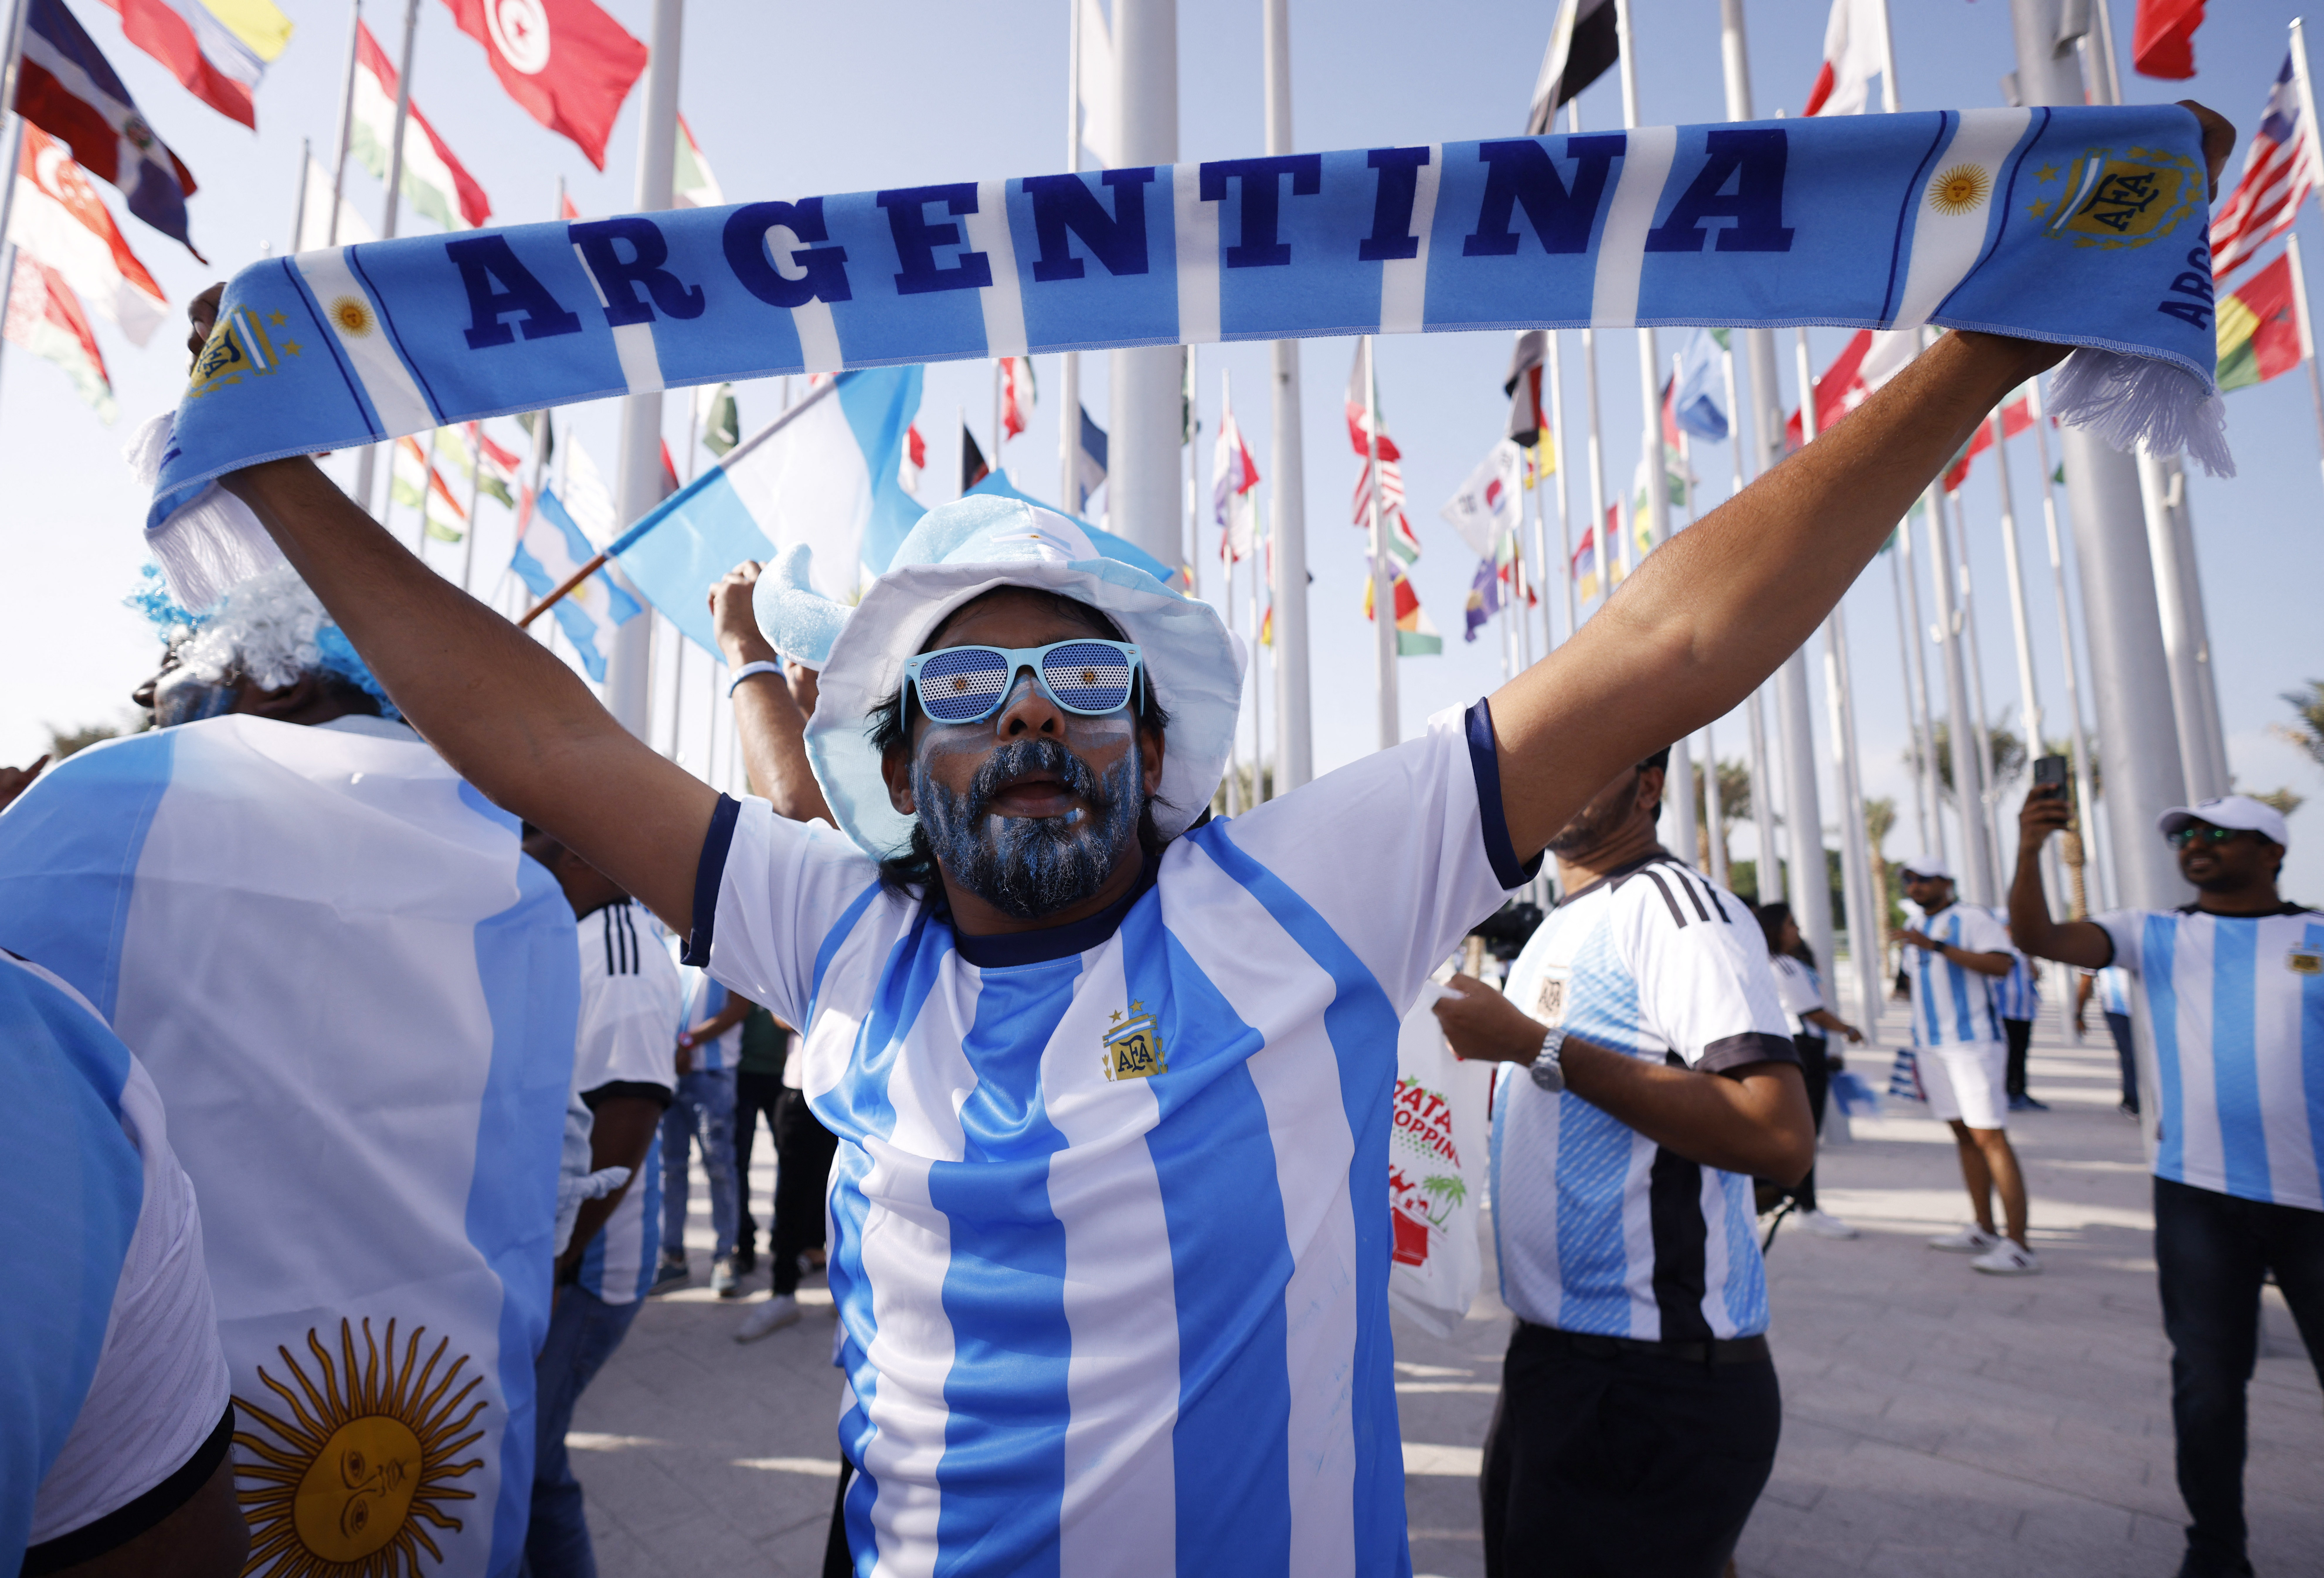 Las estimaciones oficiales indican que cerca de 40.000 argentinos viajarán al Mundial de Qatar 2022. (REUTERS/John Sibley)